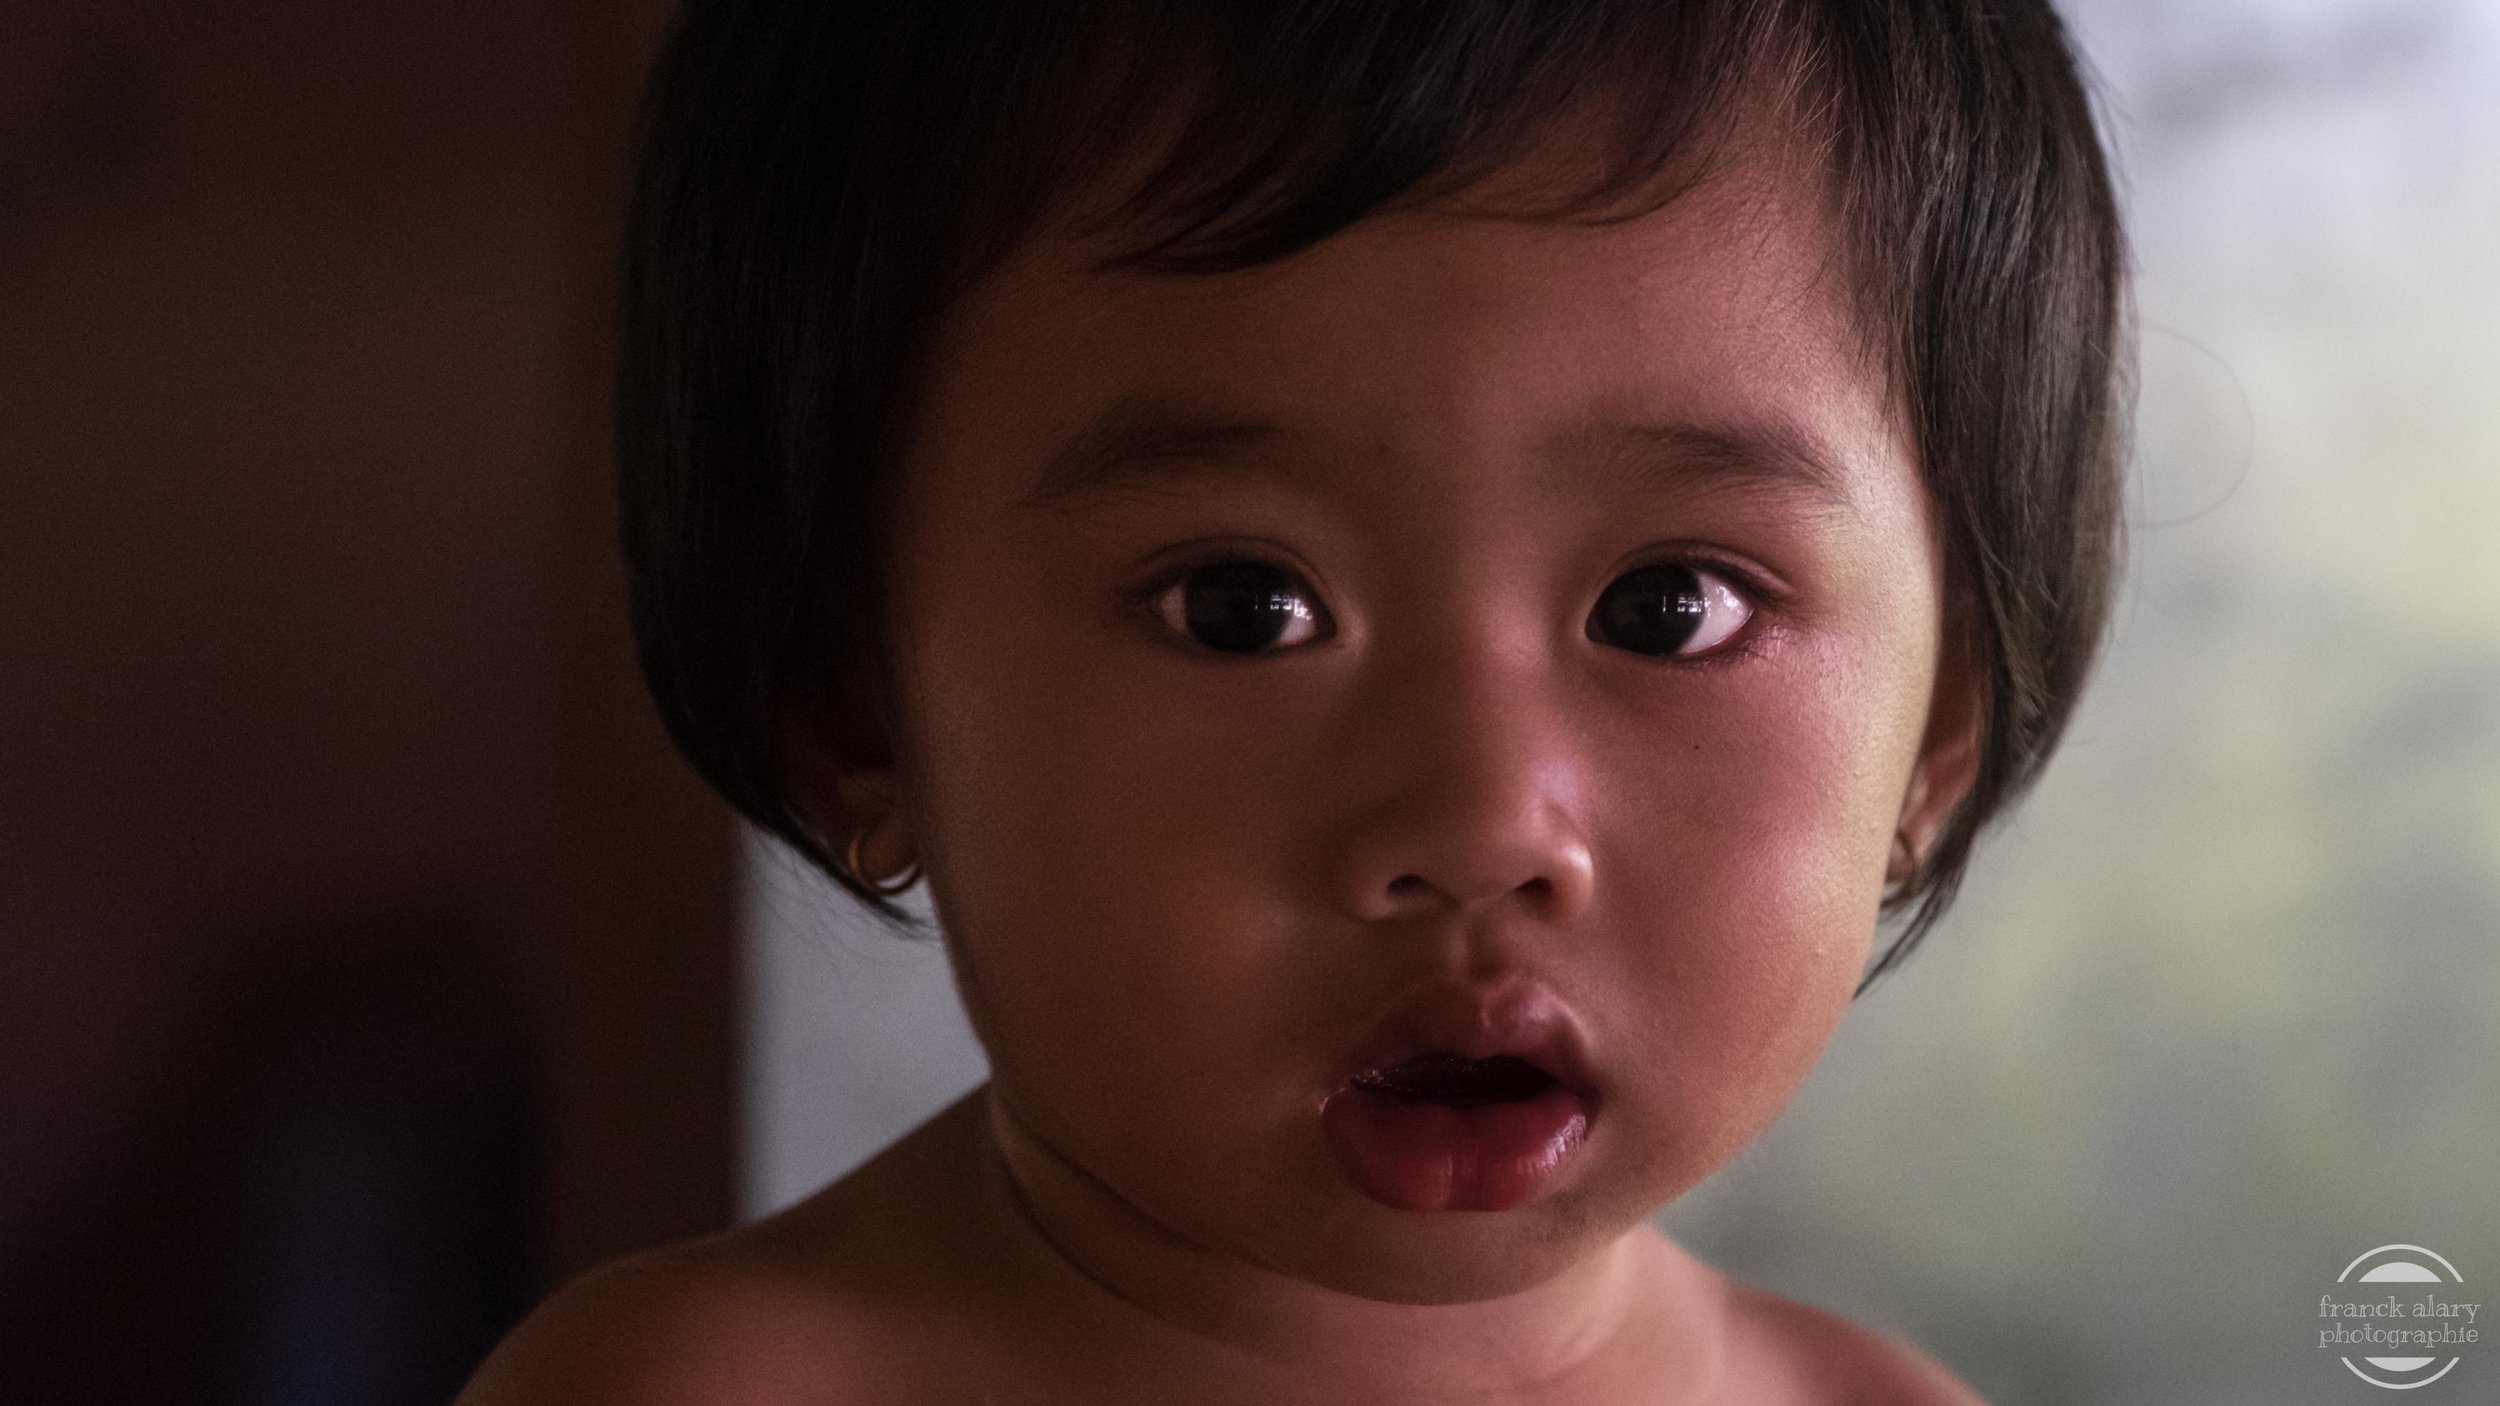   Les enfants au Laos   Plus de la moitié des Laotiens vit en dessous du seuil de pauvreté et 36 % de la population à moins de 14 ans. Le taux de mortalité infantile est élevé&nbsp;à cause du manque d’hygiène, de personnel et de matériels sanitaires 